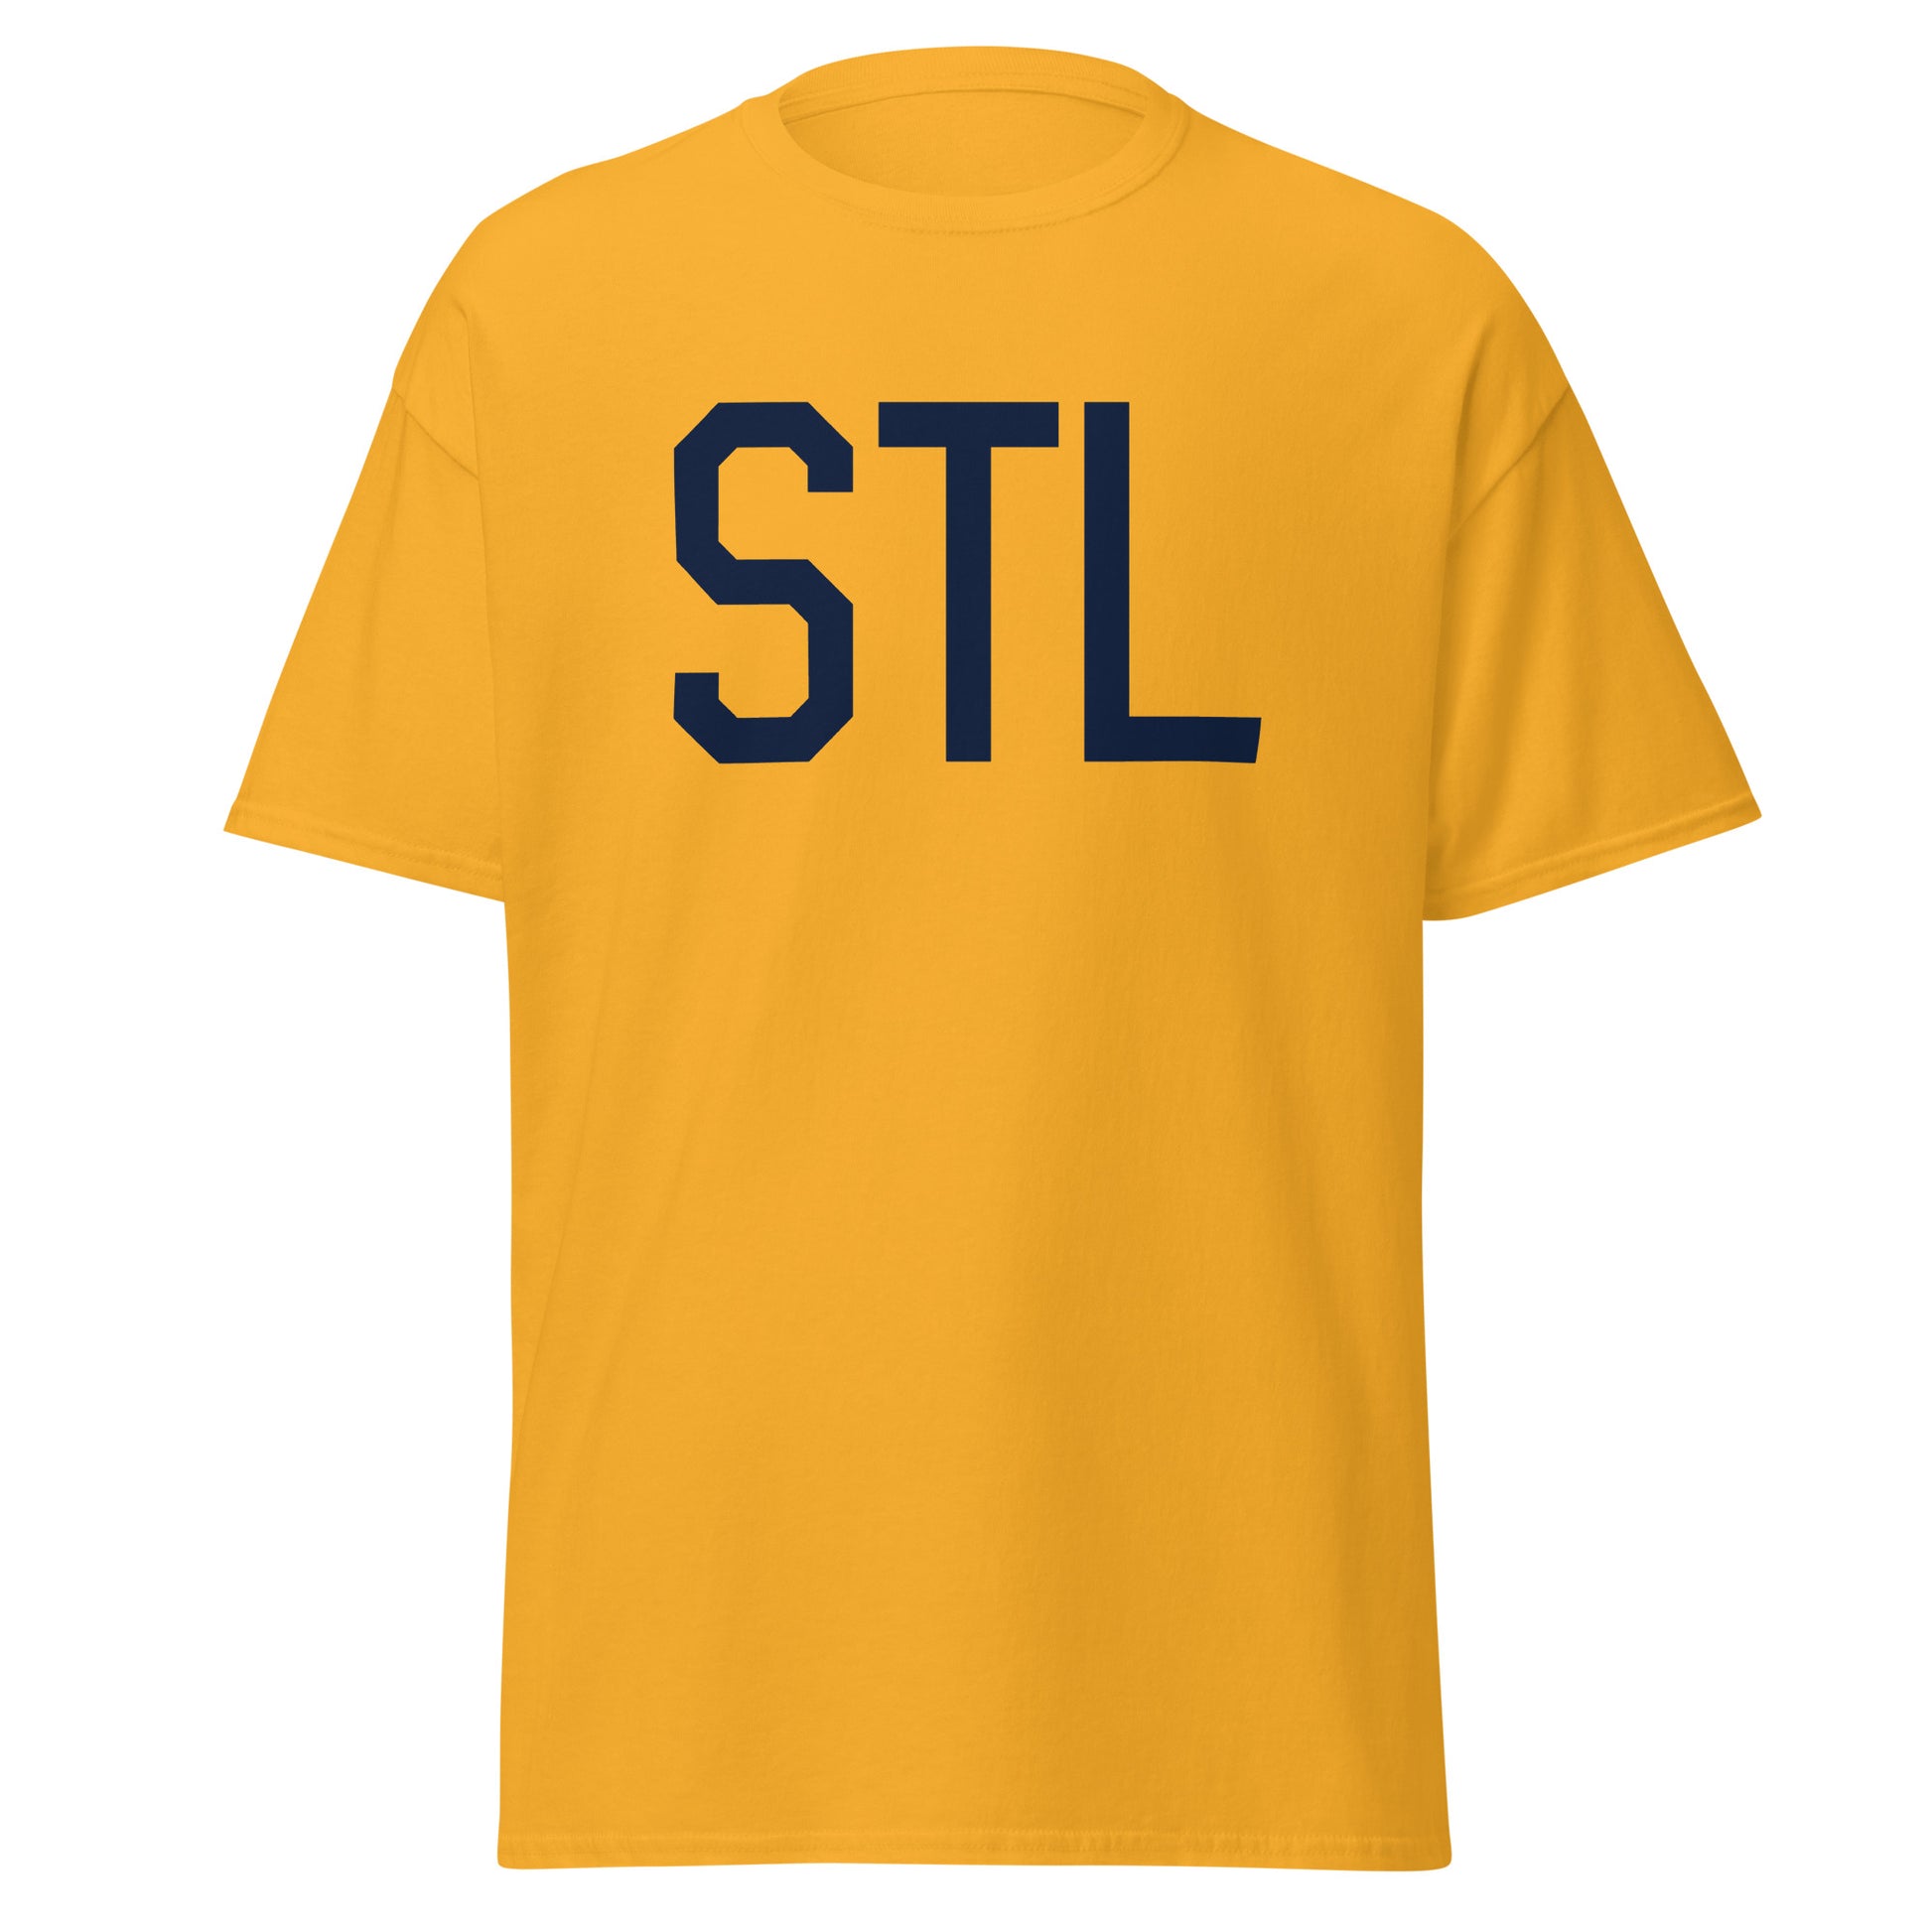 Aviation-Theme Men's T-Shirt - Navy Blue Graphic • STL St. Louis • YHM Designs - Image 05